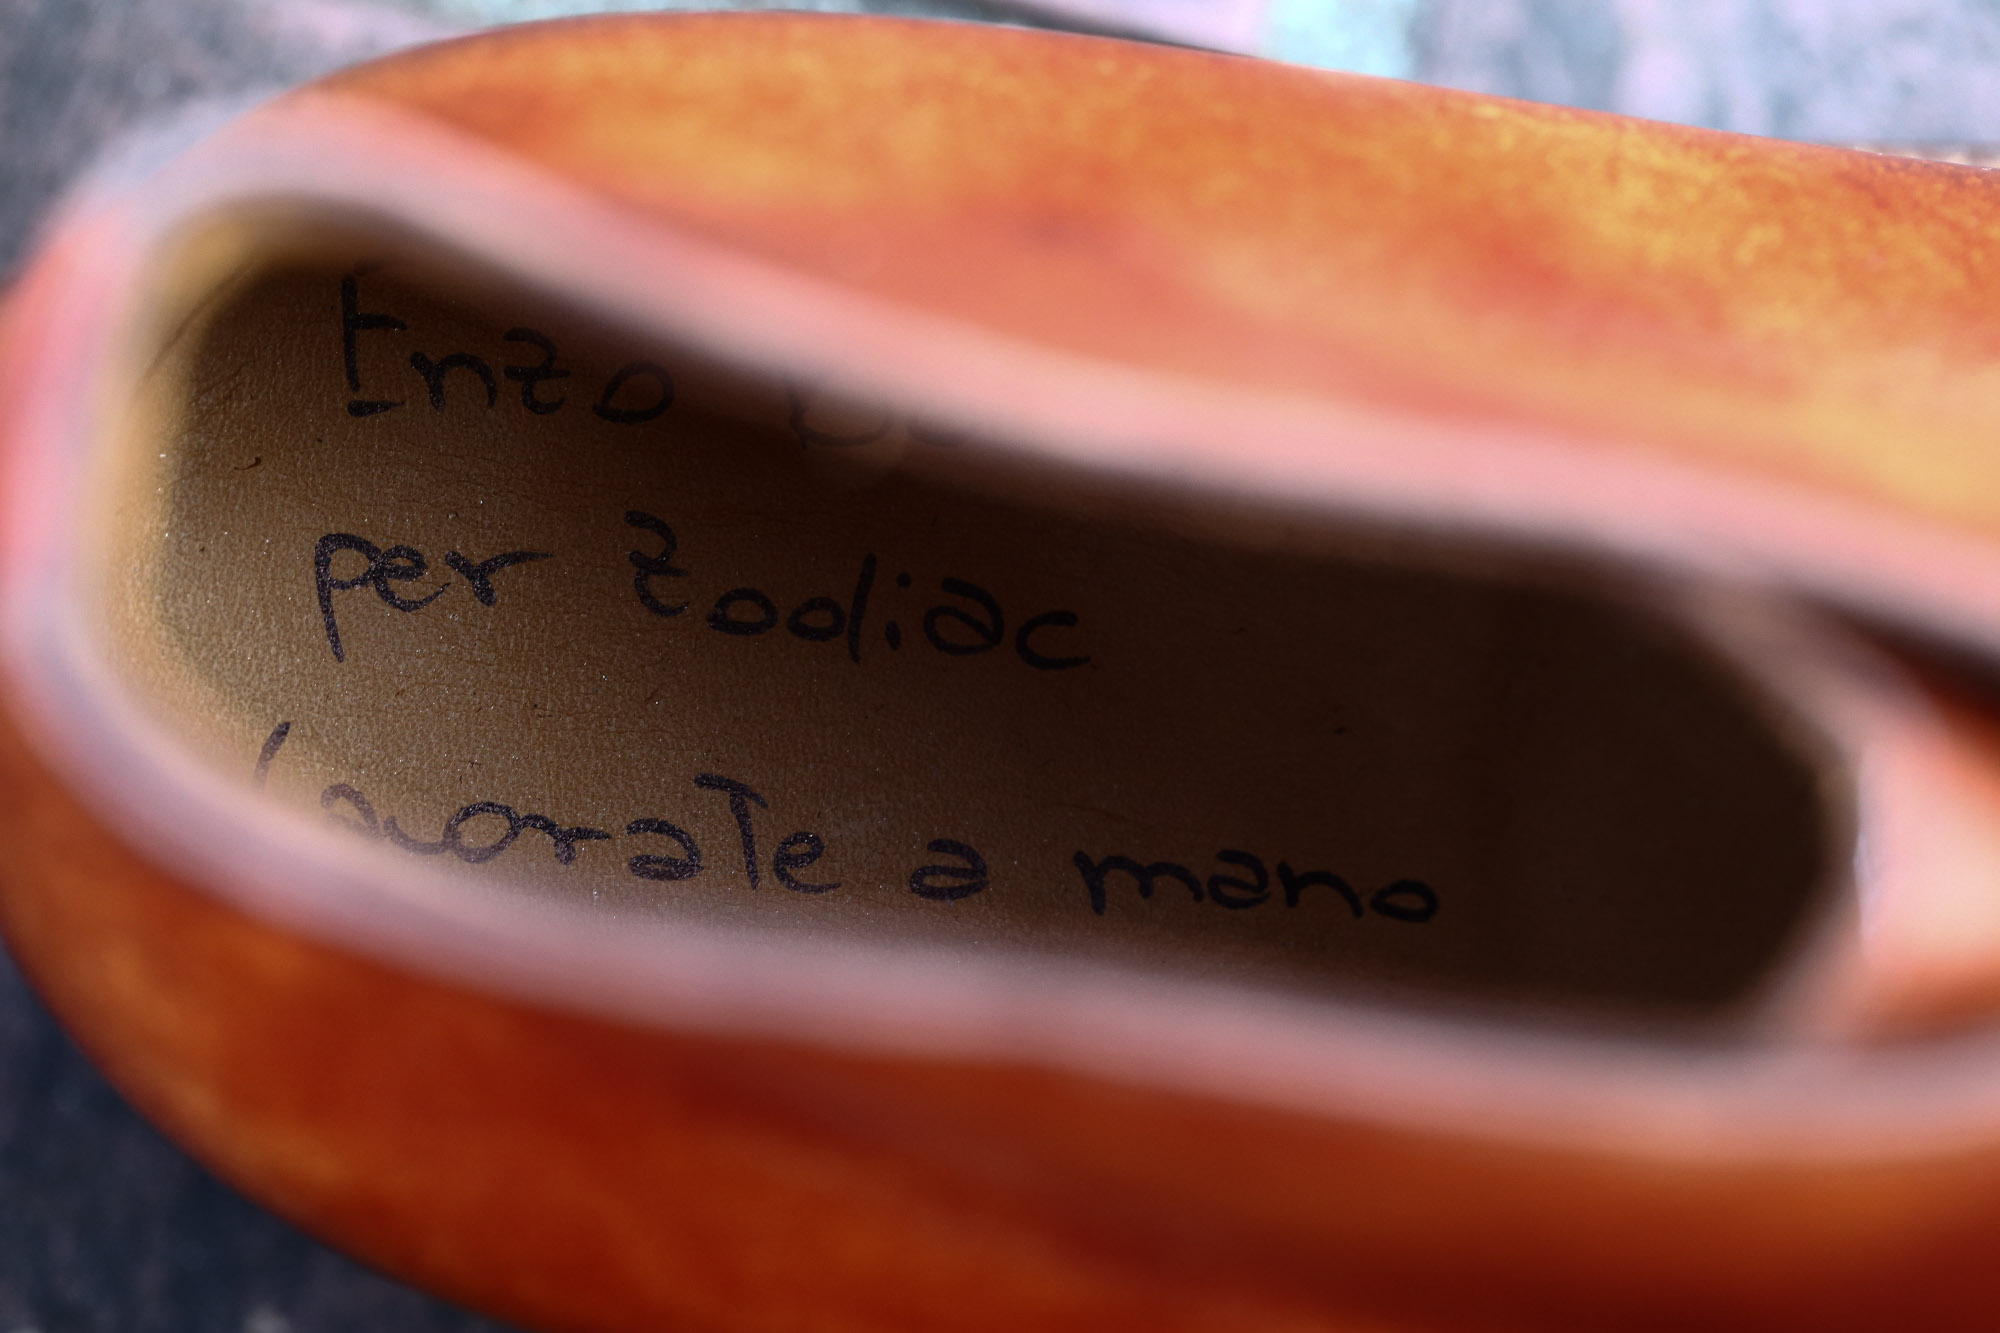 ENZO BONAFE (エンツォボナフェ) ART.3722 Chukka boots チャッカブーツ Bonaudo Museum Calf Leather ボナウド社 ミュージアムカーフレザー ノルベジェーゼ製法 レザーソール チャッカブーツ NEW GOLD (ニューゴールド) made in Italy(イタリア製) 2017 春夏新作 愛知 名古屋 Alto e Diritto アルト エ デリット エンツォボナフェ ボナフェ ベネチアンクリーム JOHN LOBB ジョンロブ CHURCH’S チャーチ JOSEPH CHEANEY ジョセフチーニー CORTHAY コルテ ALFRED SARGENT アルフレッドサージェント CROCKETT&JONES クロケットジョーンズ F.LLI GIACOMETTI フラテッリジャコメッティ ENZO BONAFE エンツォボナフェ BETTANIN&VENTURI ベッタニンヴェントゥーリ JALAN SRIWIJAYA ジャランスリウァヤ J.W.WESTON ジェイエムウエストン SANTONI サントーニ SERGIO ROSSI セルジオロッシ CARMINA カルミナ